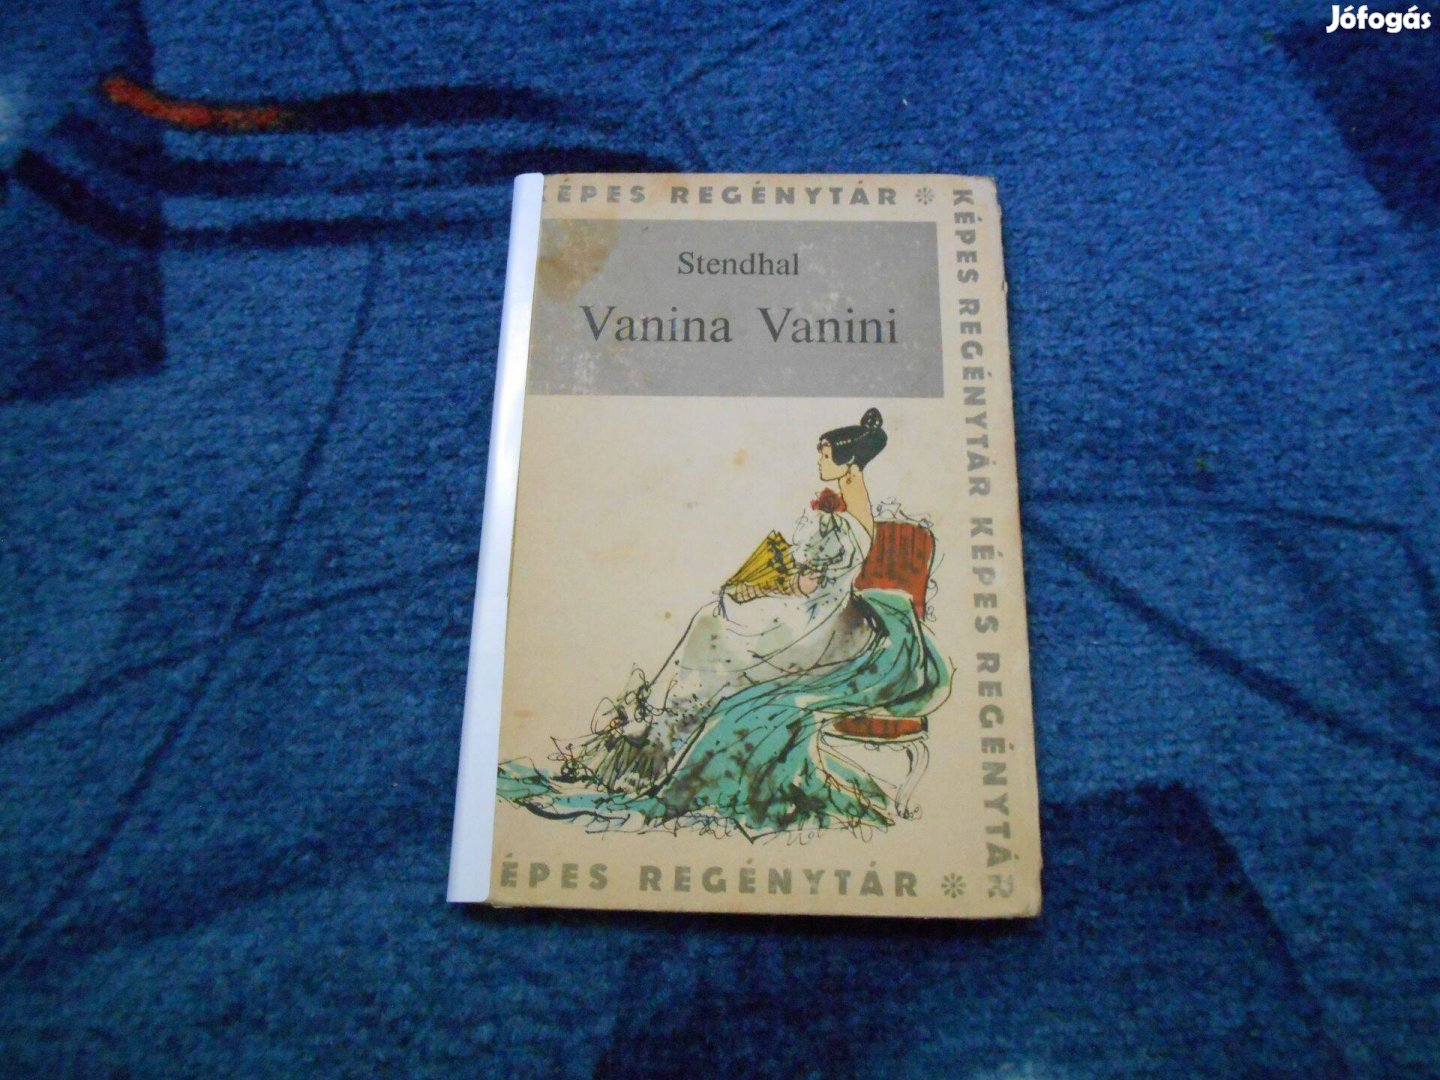 Stendhal: Vanina Vanini